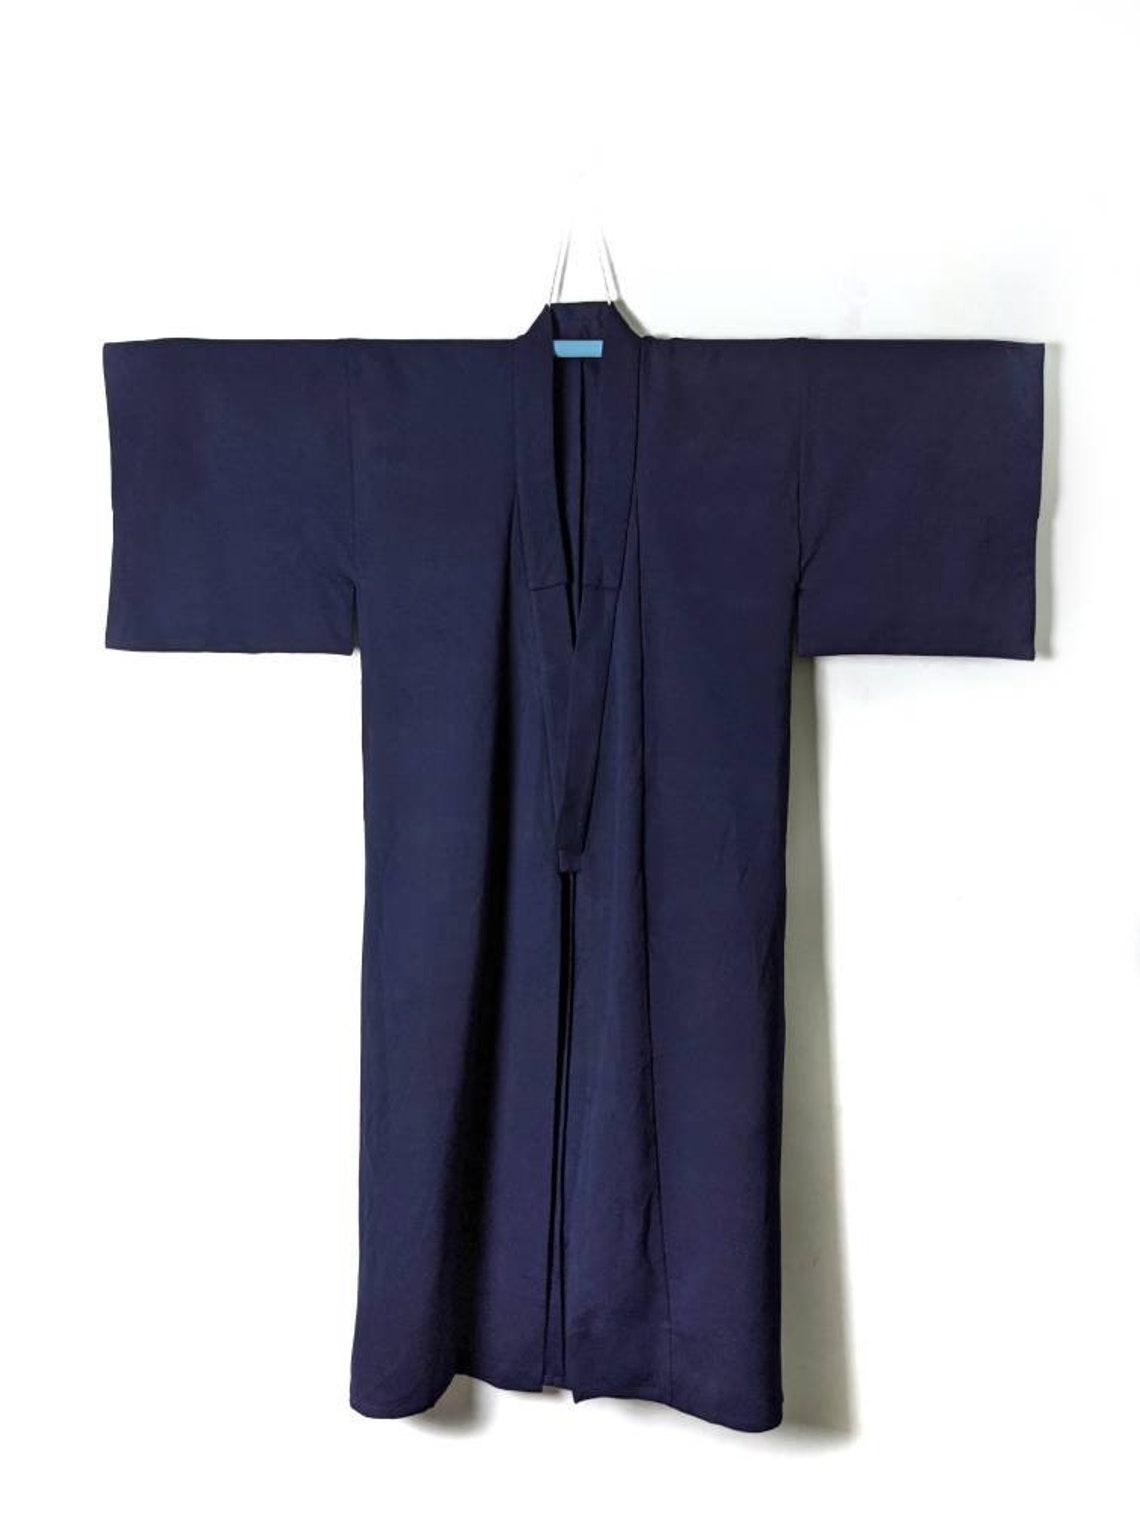 Authentic Japanese Mens kimono Yukata in Blue colour | Etsy